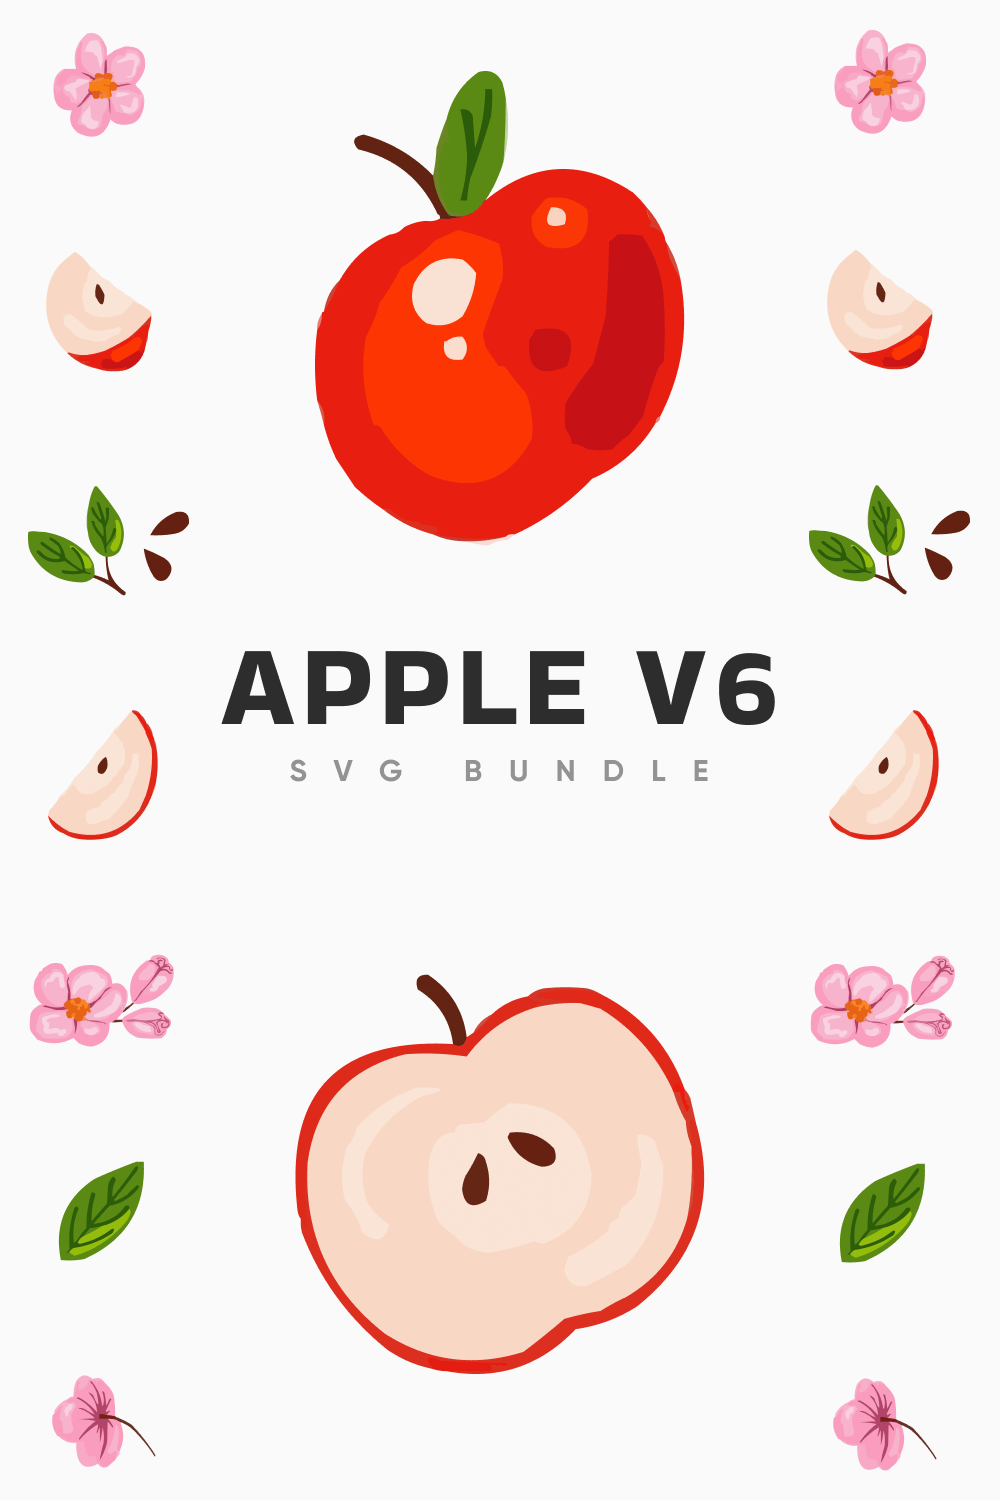 Apple V6 SVG Bundle.